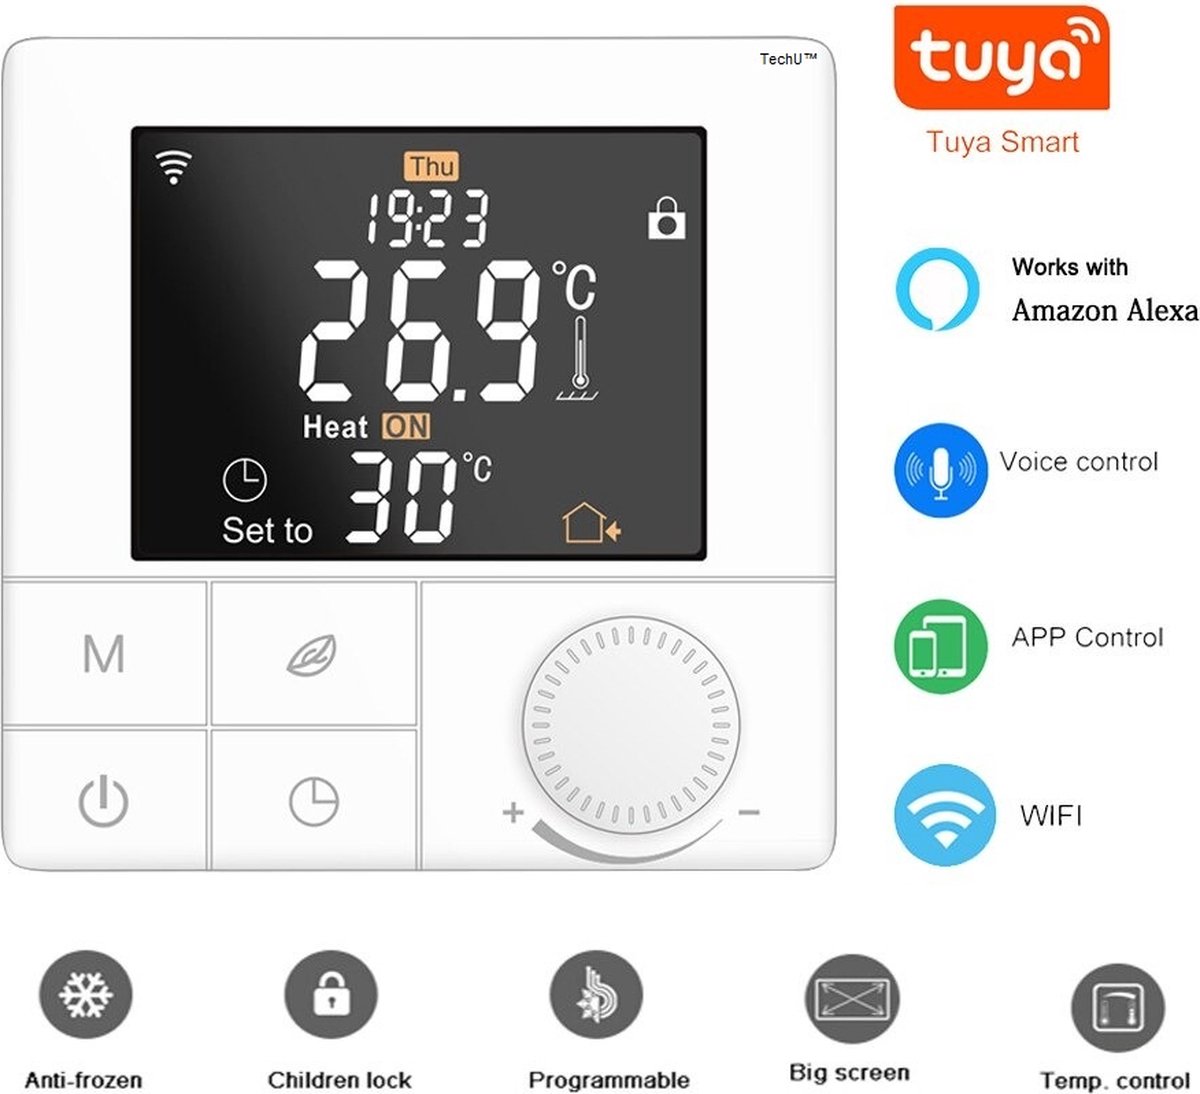 Thermostat de chaudière à gaz LCD NO NC COM avec bouton rotatif